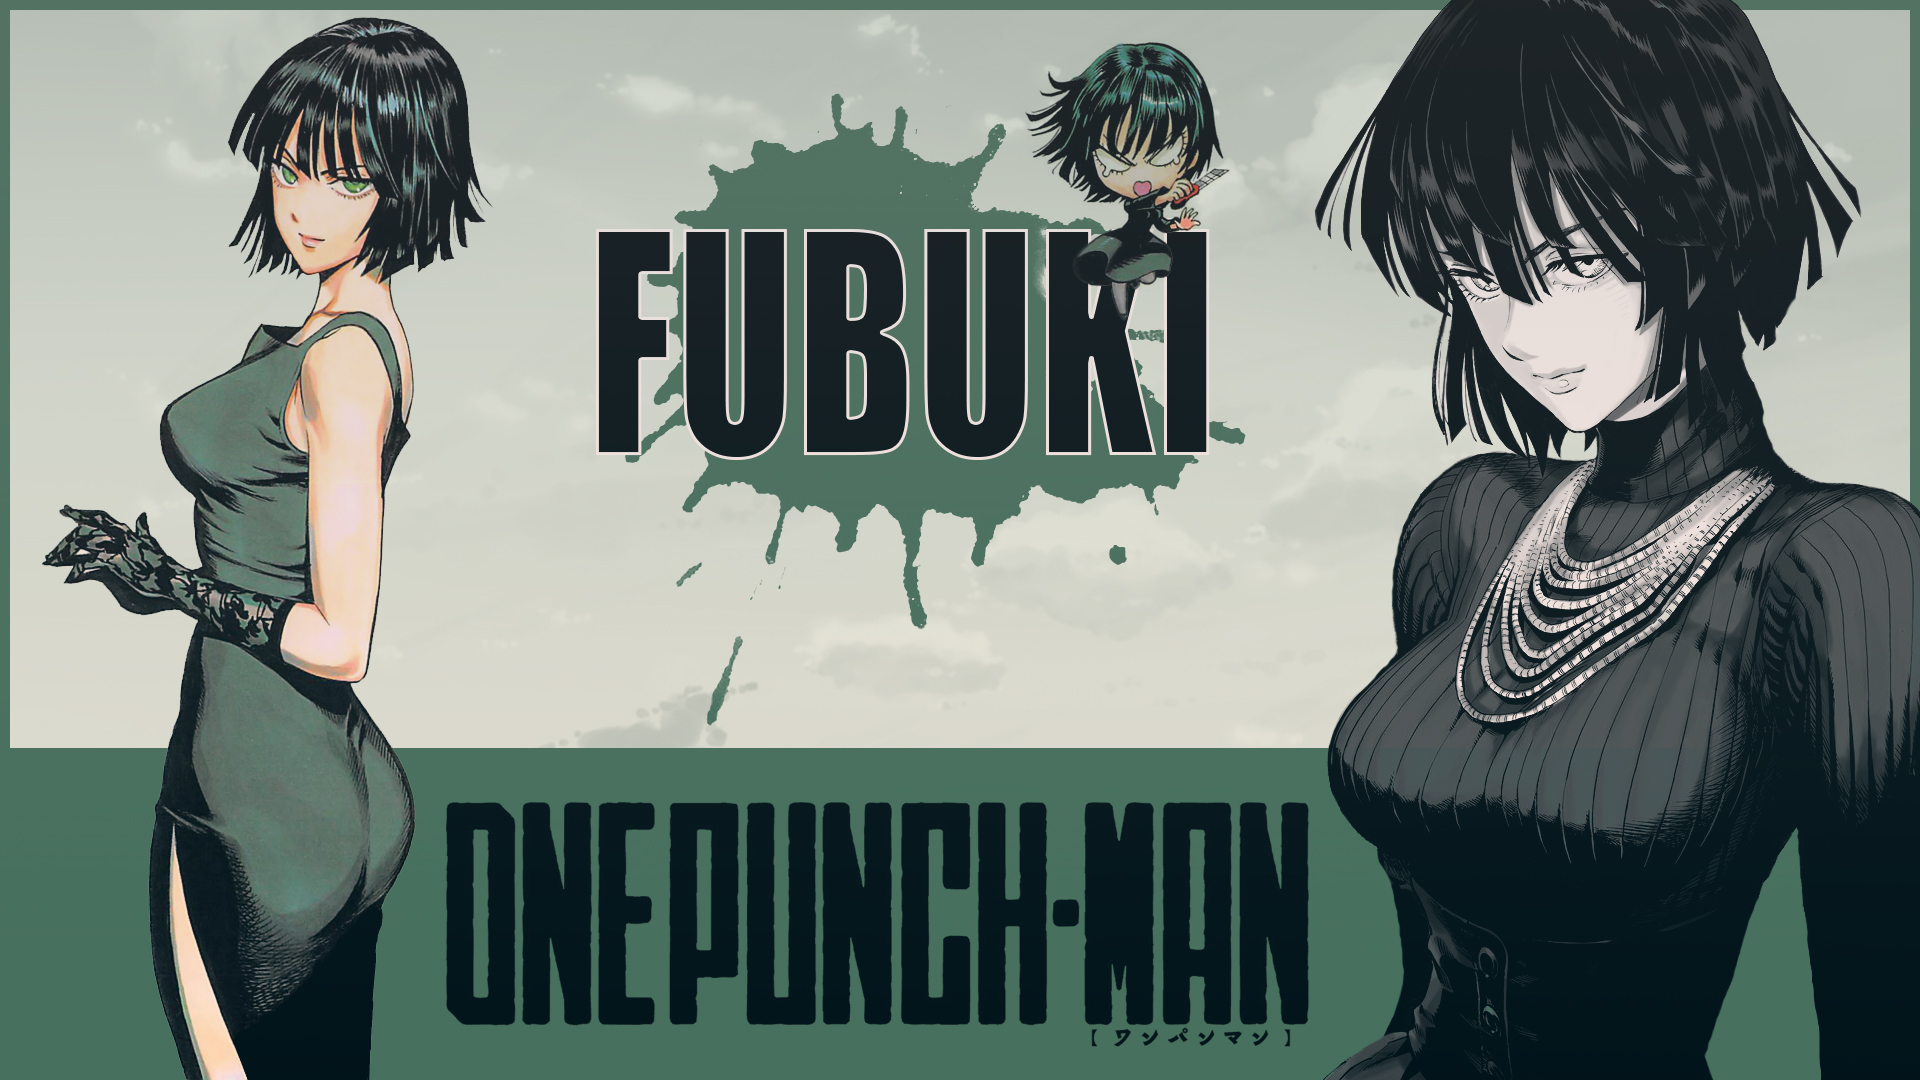 732250 descargar imagen one punch man, animado, fubuki (hombre de un solo golpe): fondos de pantalla y protectores de pantalla gratis